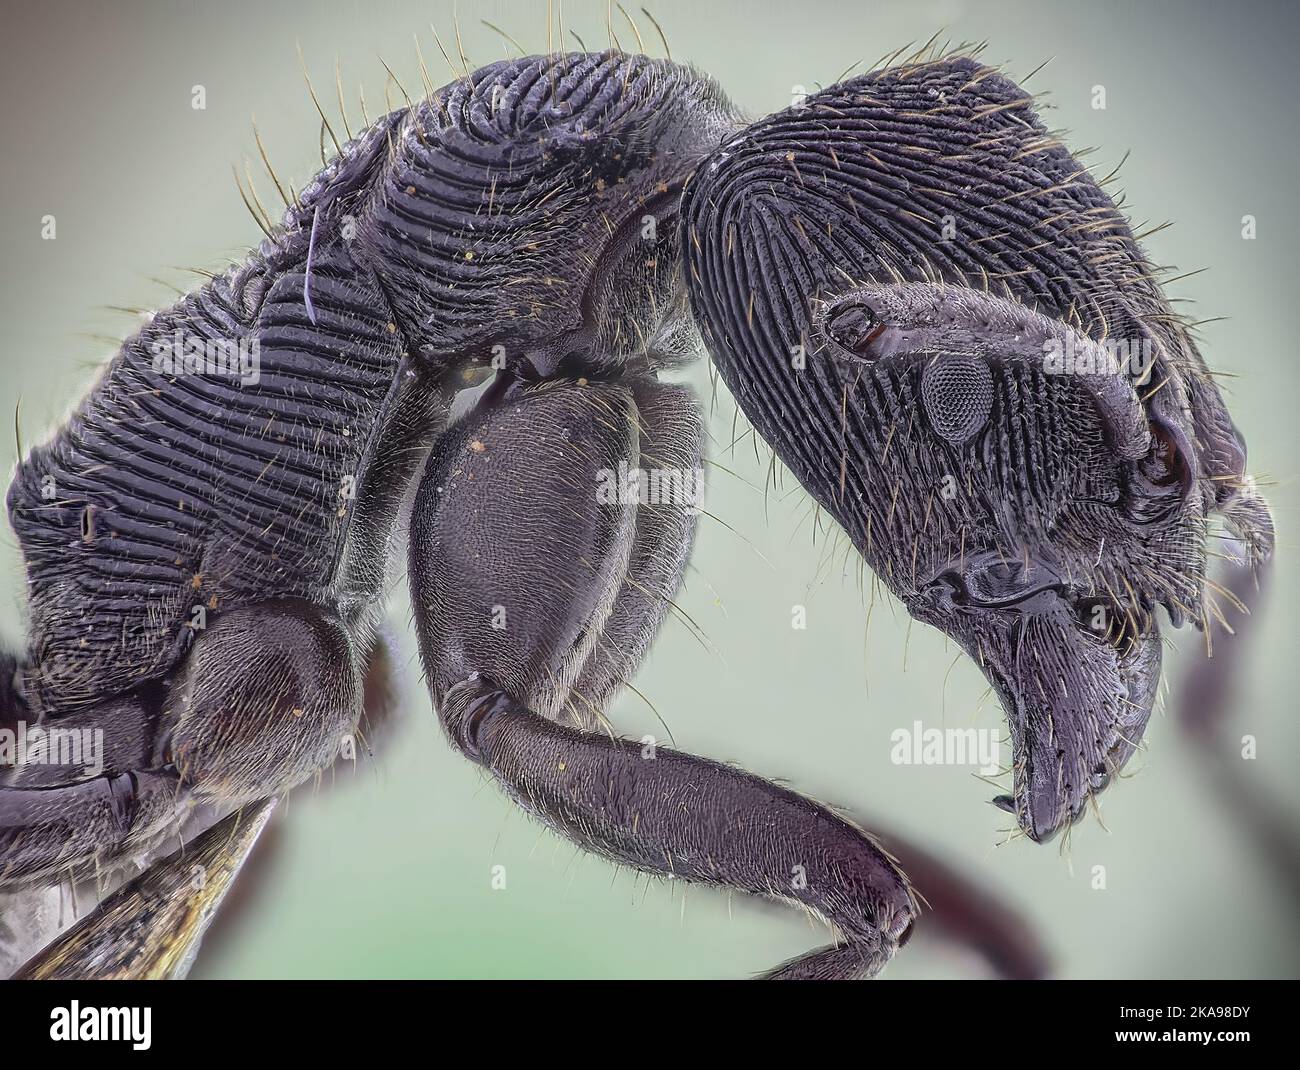 Microscopic Head Detail of Tooth Ant Odontoponera SP, Arthropoda Phylum, Ponerinae Subfamily, 10X magnification Macro Side view Stock Photo